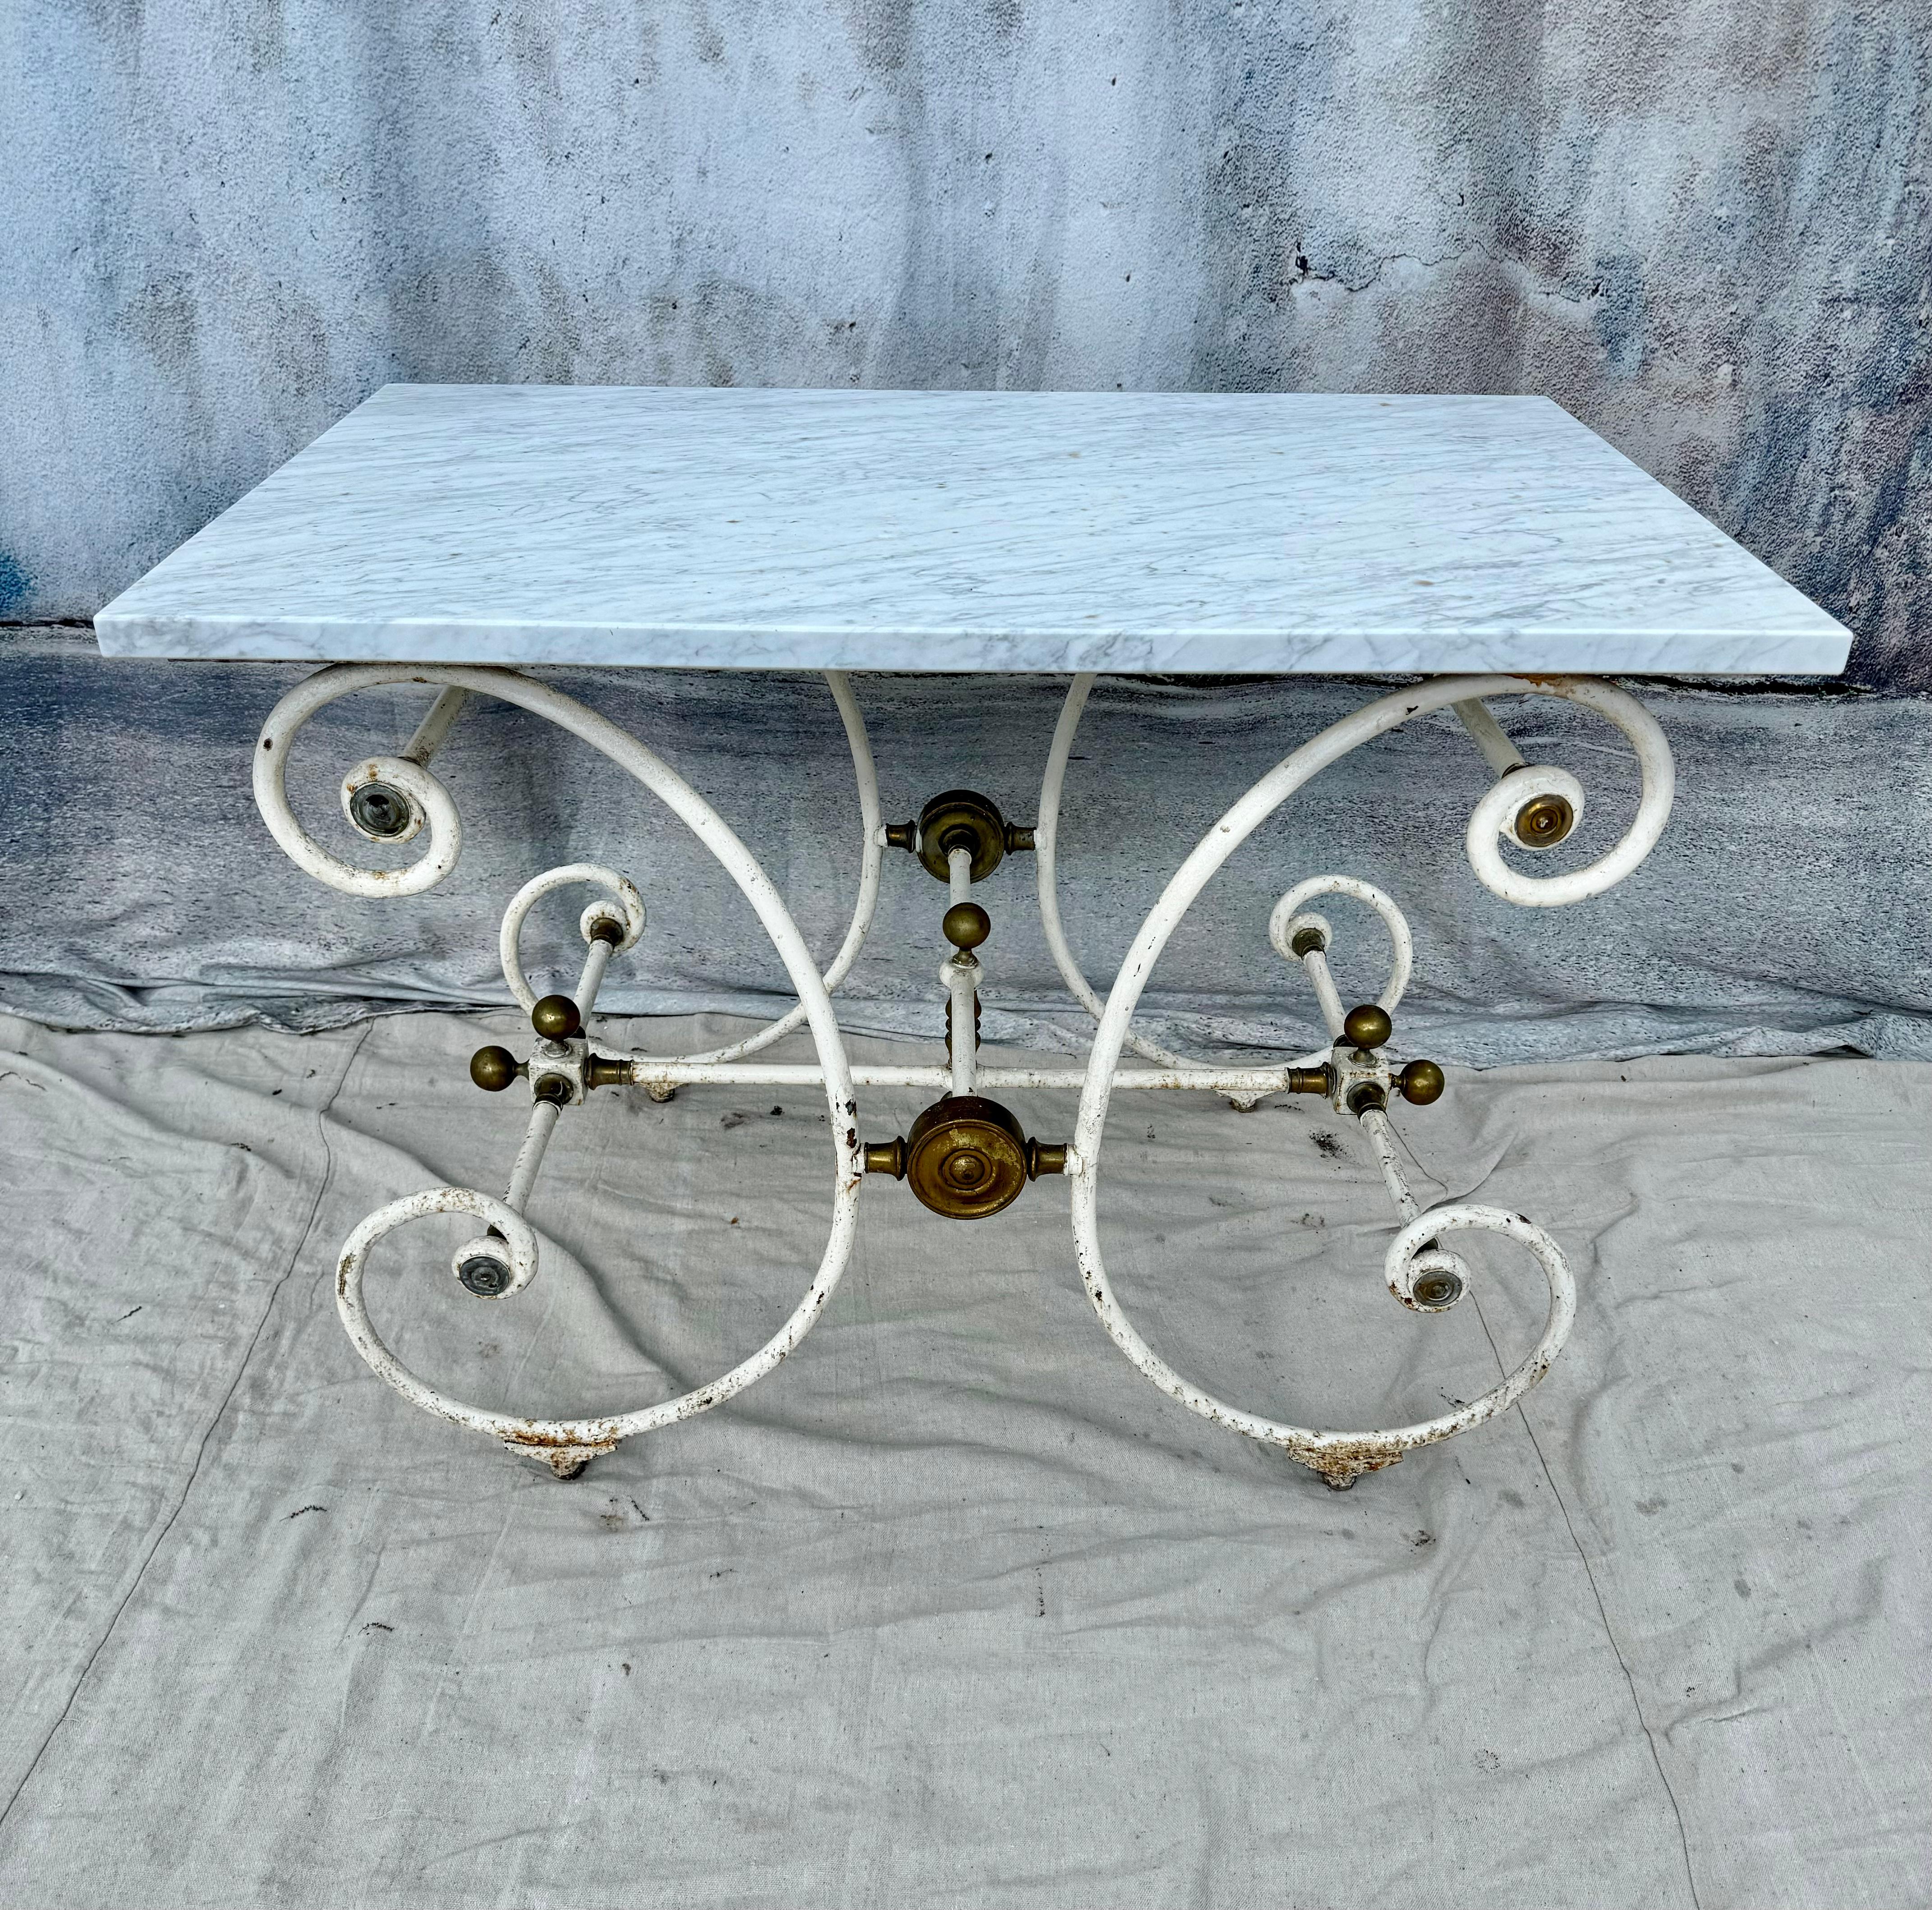 Französischer Bäckertisch des 19. Jahrhunderts von J. Mareschal, Paris.  Tisch mit klassischer weißer Marmorplatte und geschwungenem Sockel aus Schmiedeeisen. Der Tisch ist mit Bronzedetails verziert. Auf diesen Tischen wurden die feinsten Fleisch-